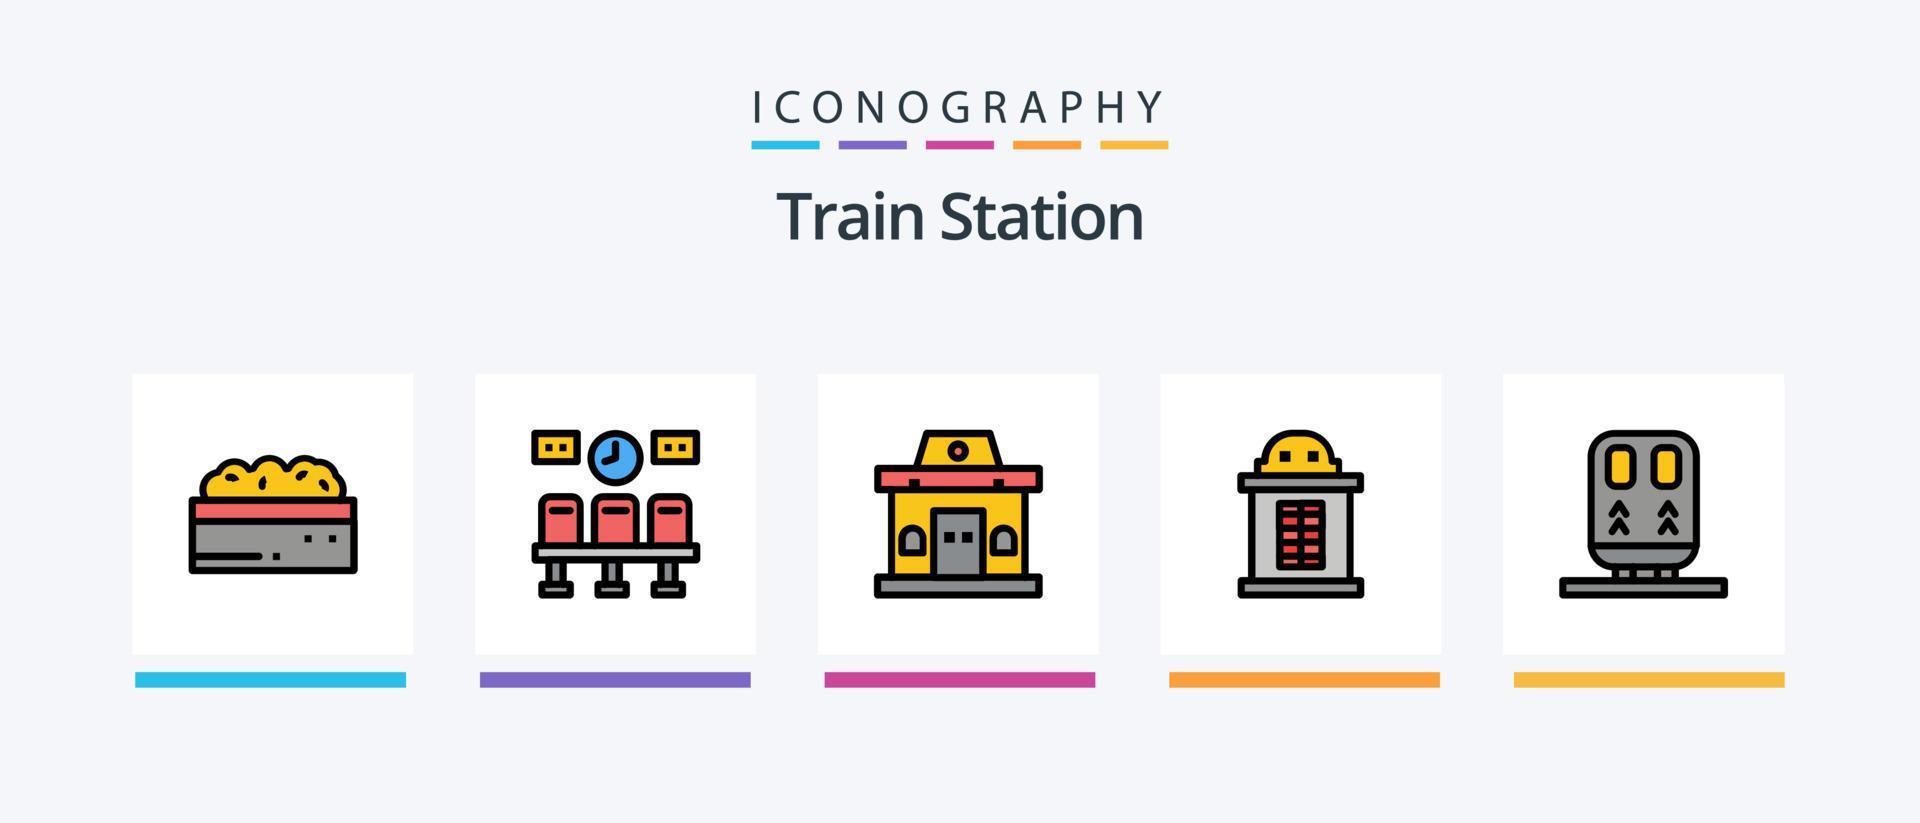 la línea de la estación de tren llenó el paquete de 5 iconos, incluido el tren. puerta. arbusto. transporte. subterraneo. diseño de iconos creativos vector